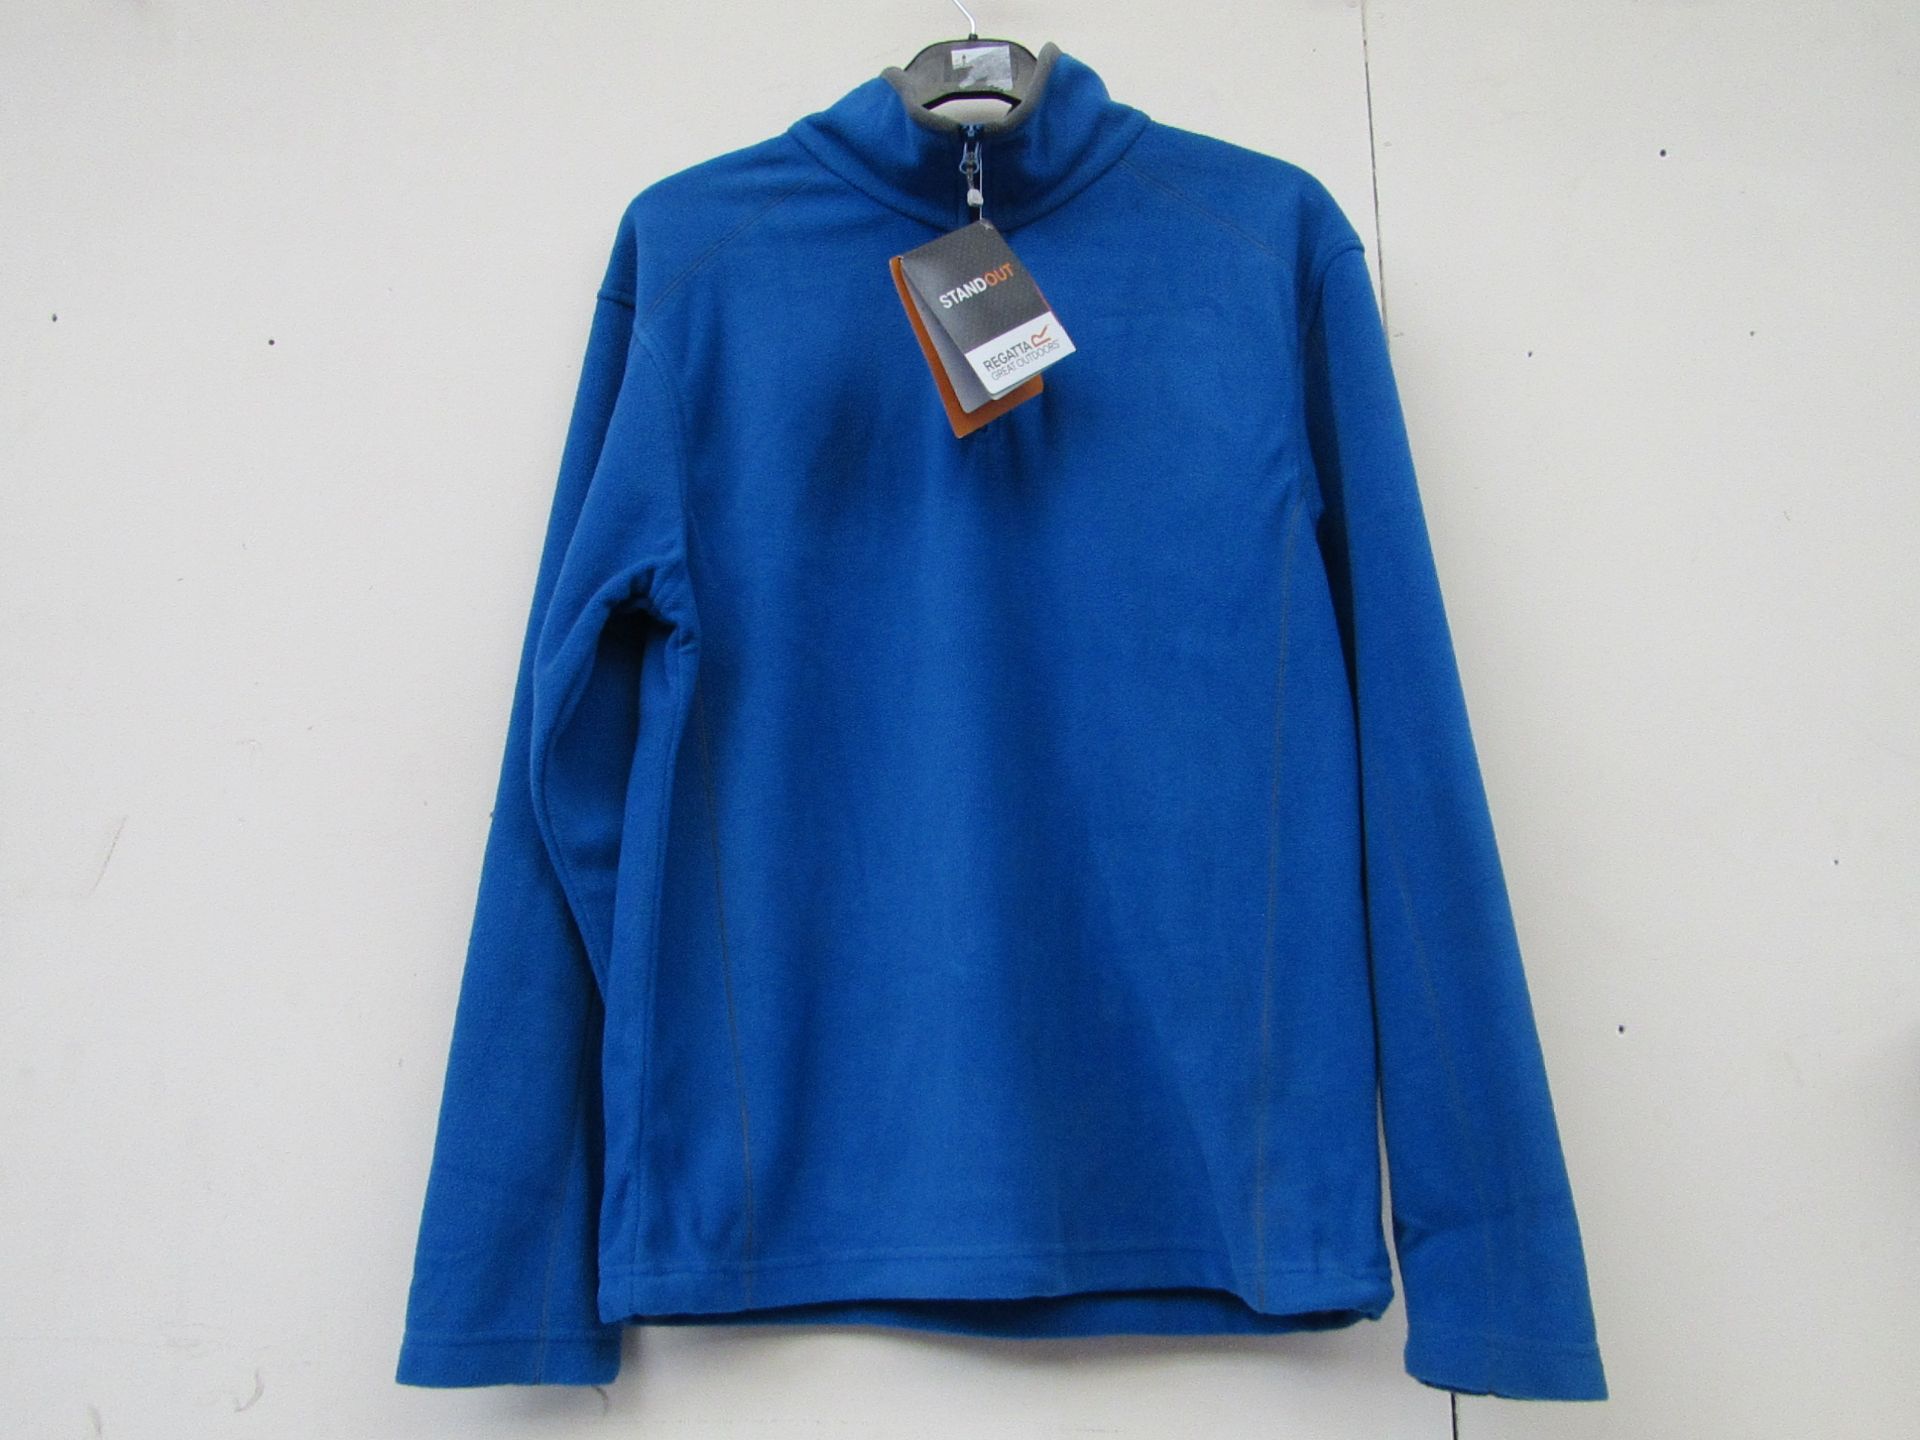 Regatta blue fleece (size XXXL), new in packaging